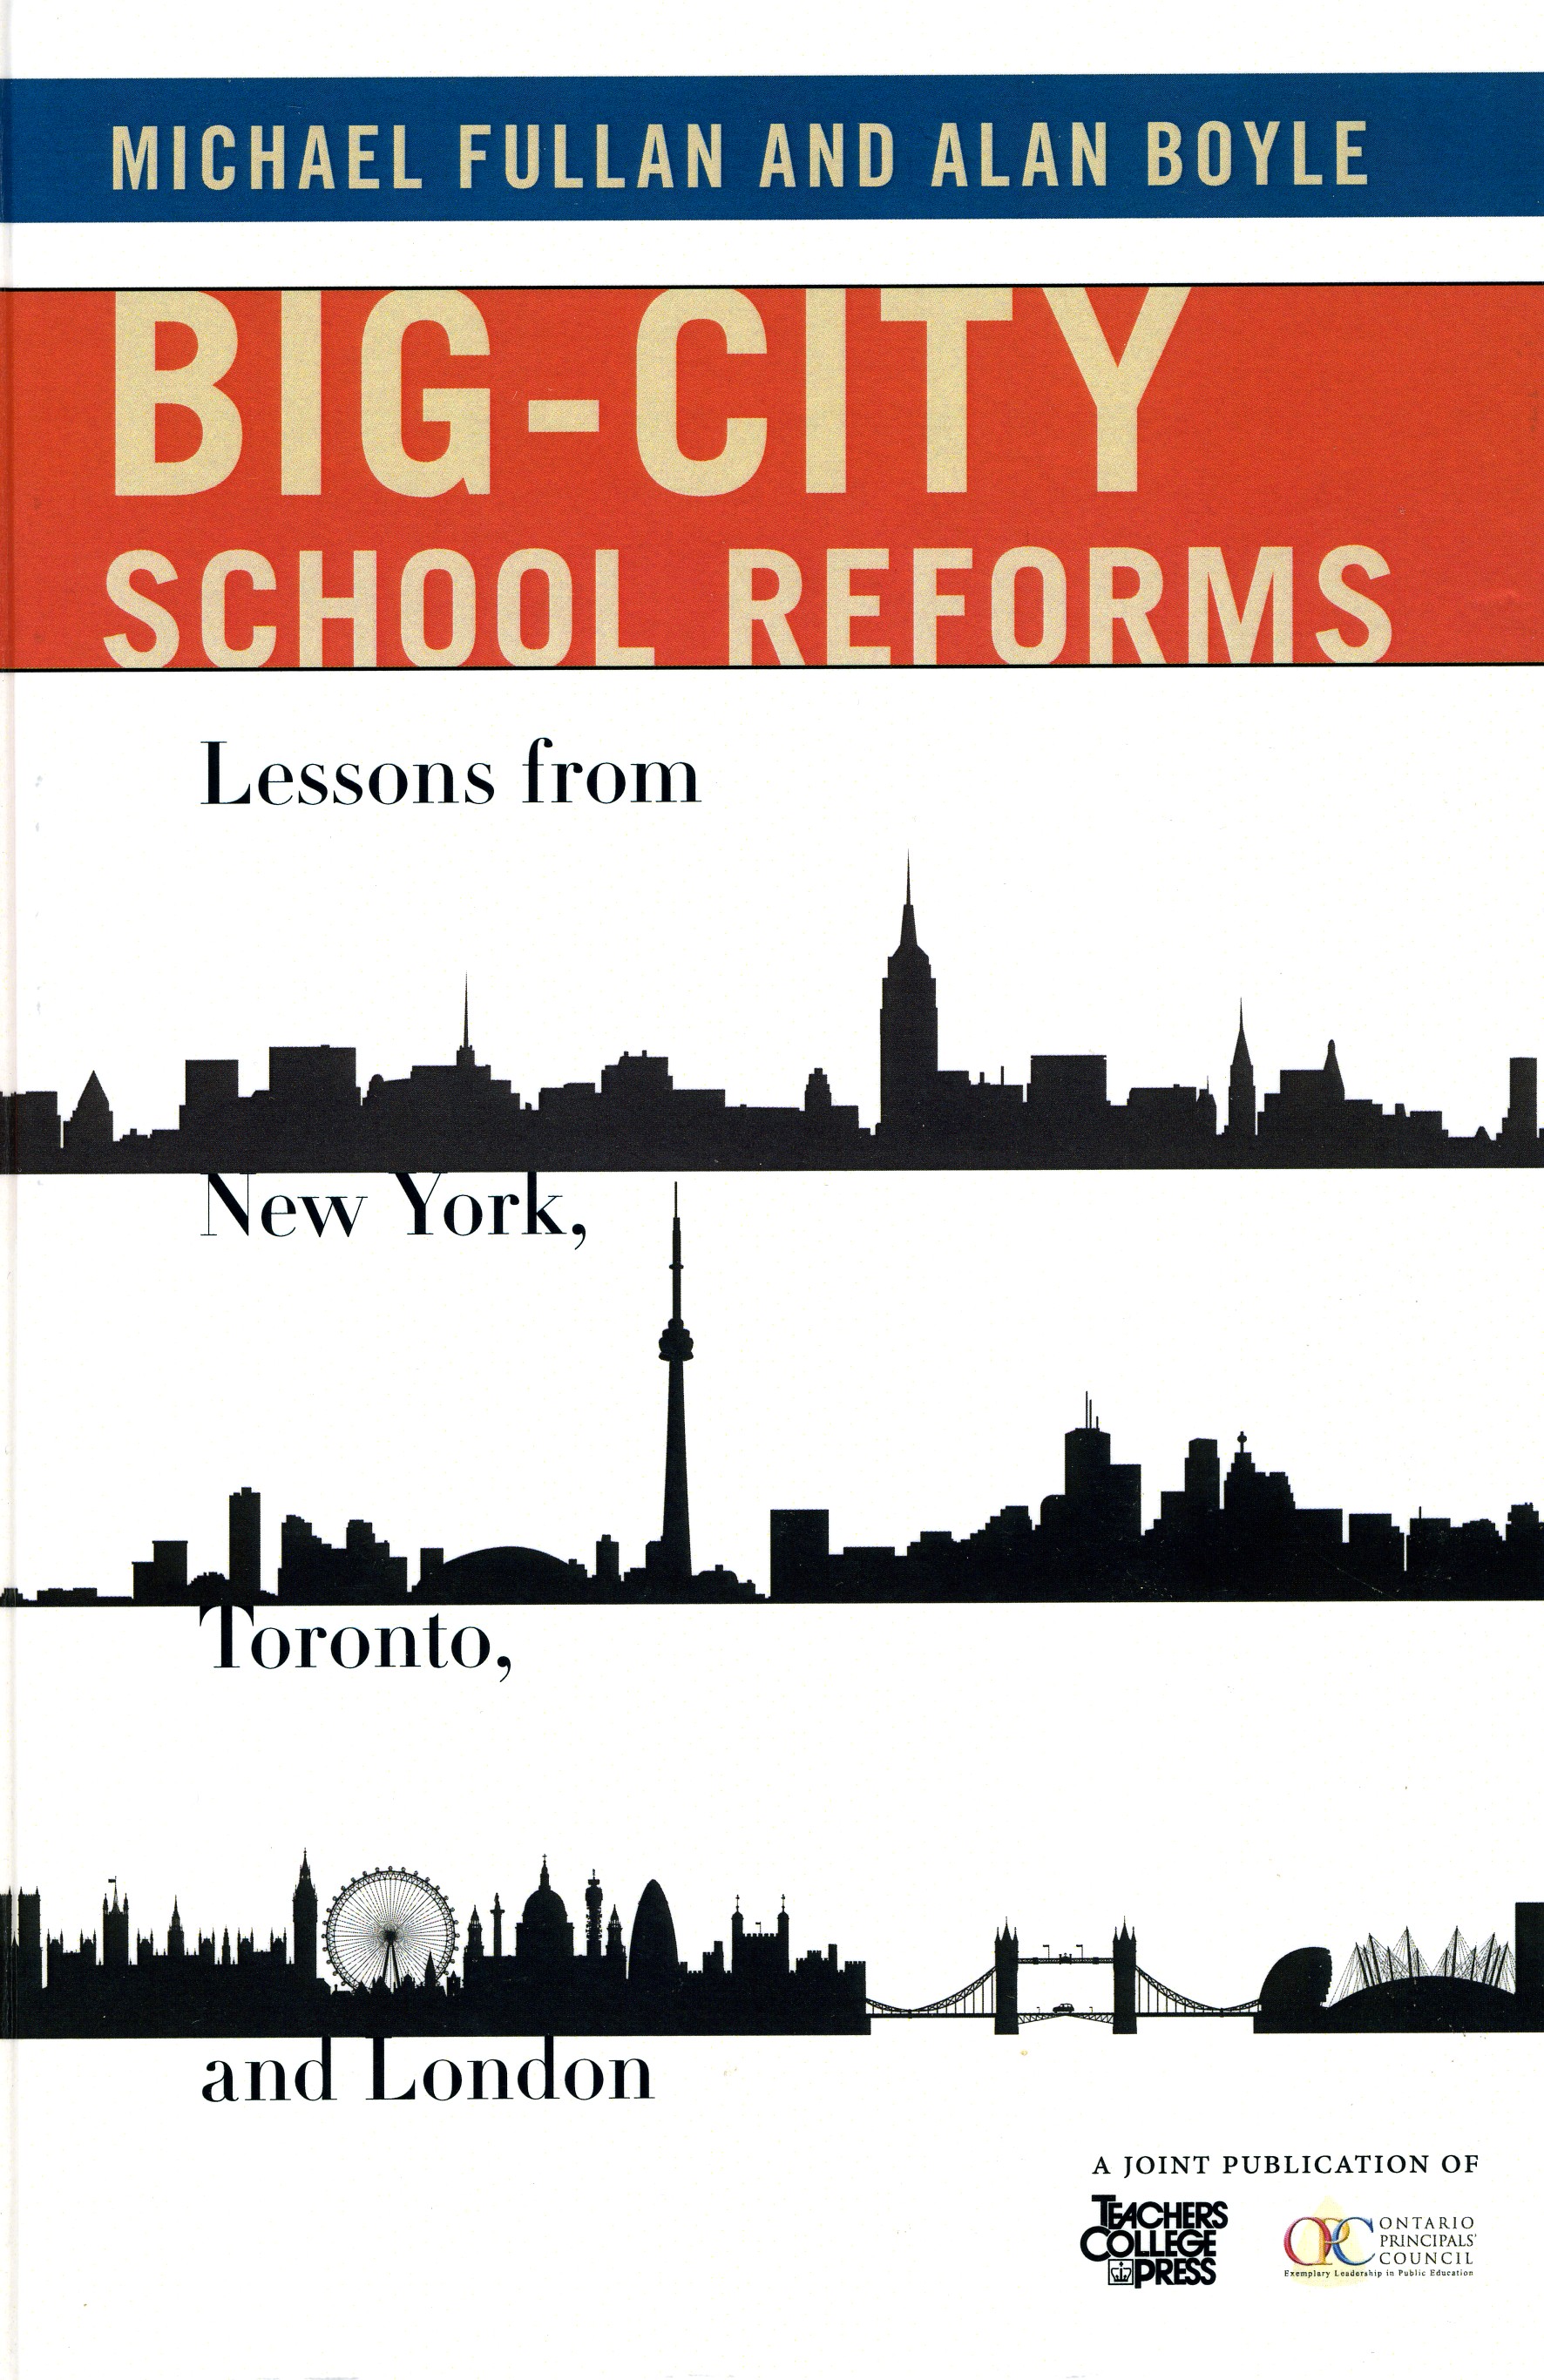 Big-City School Reforms